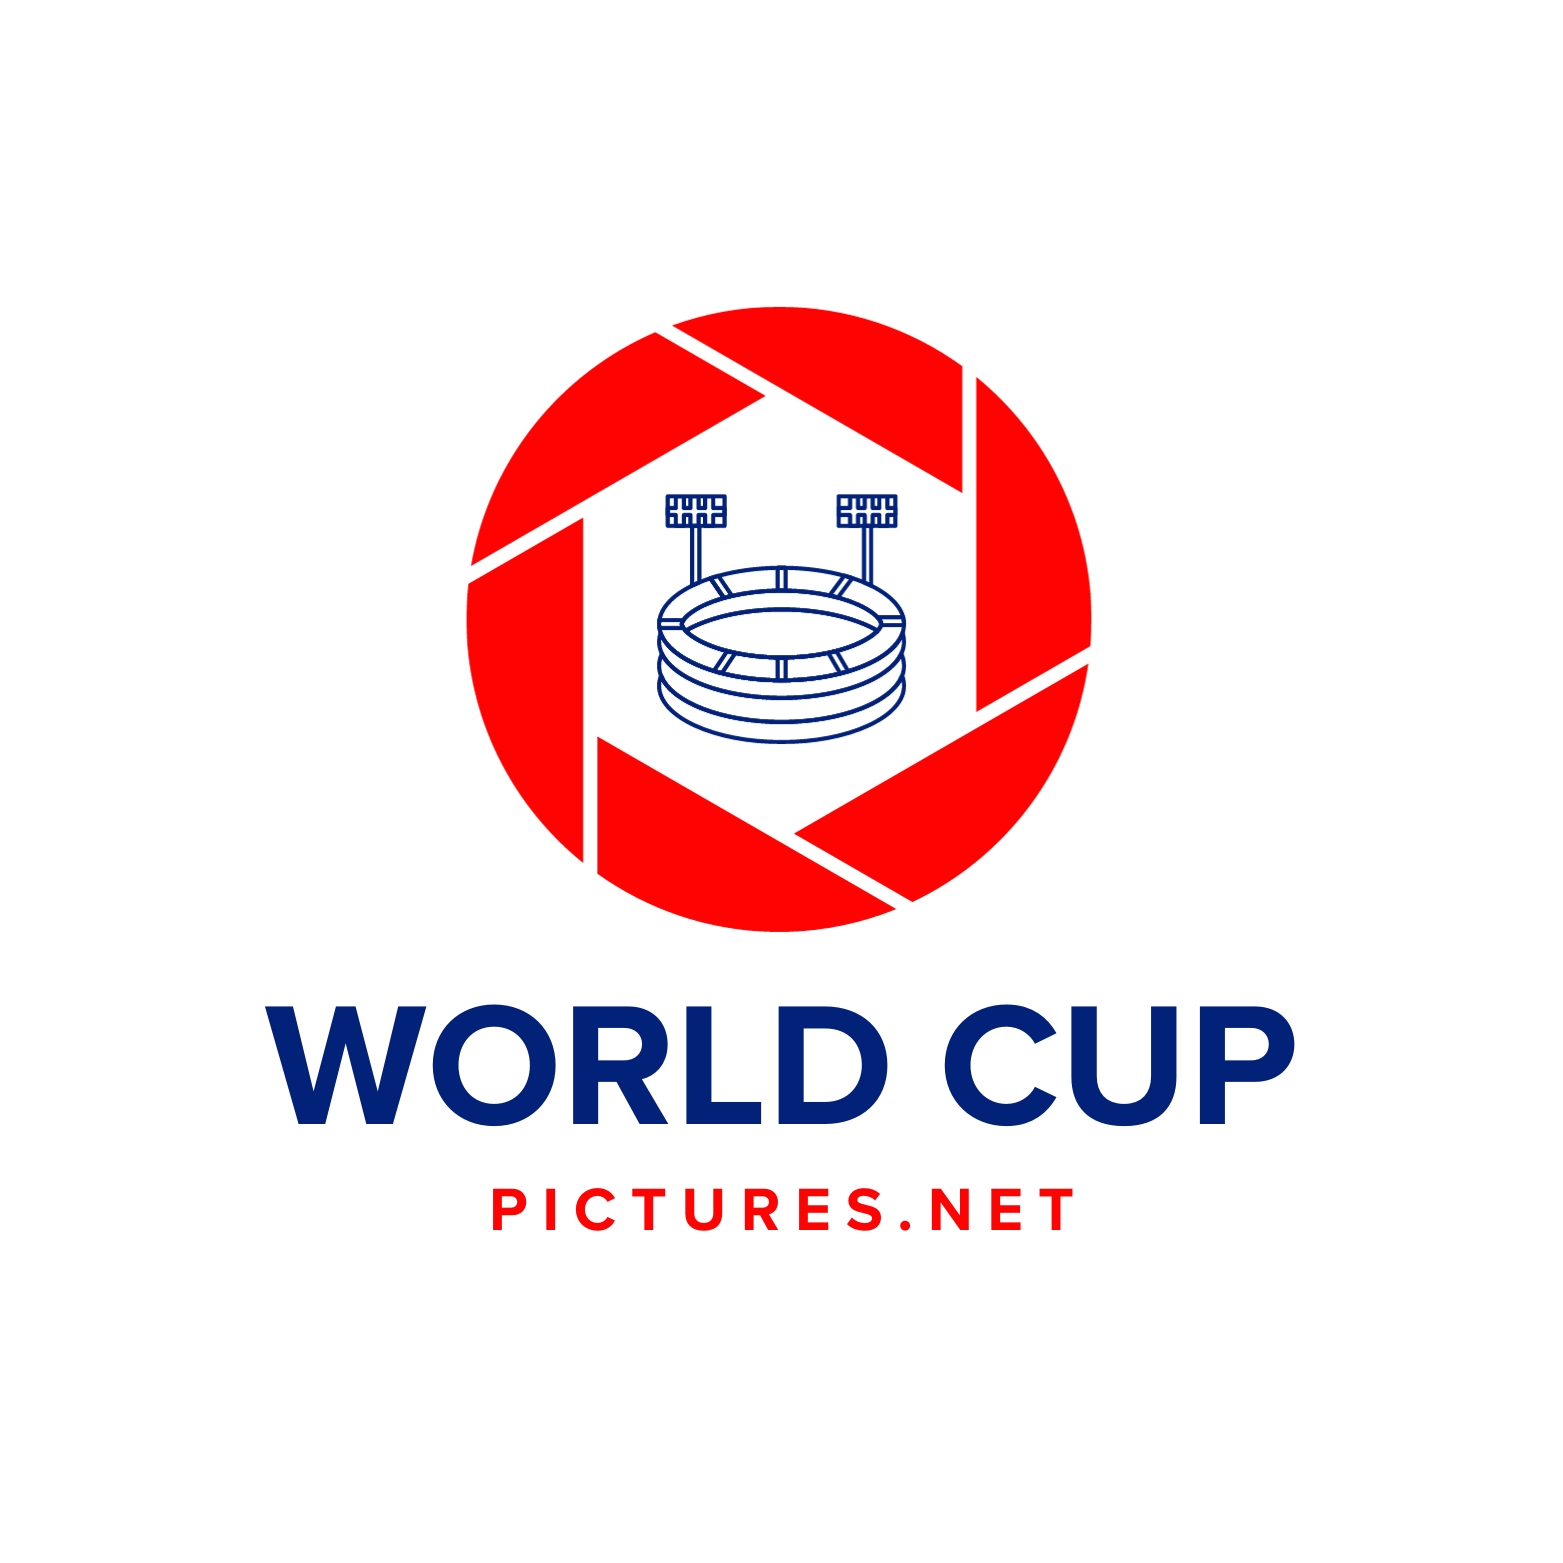 (c) Worldcuppictures.net